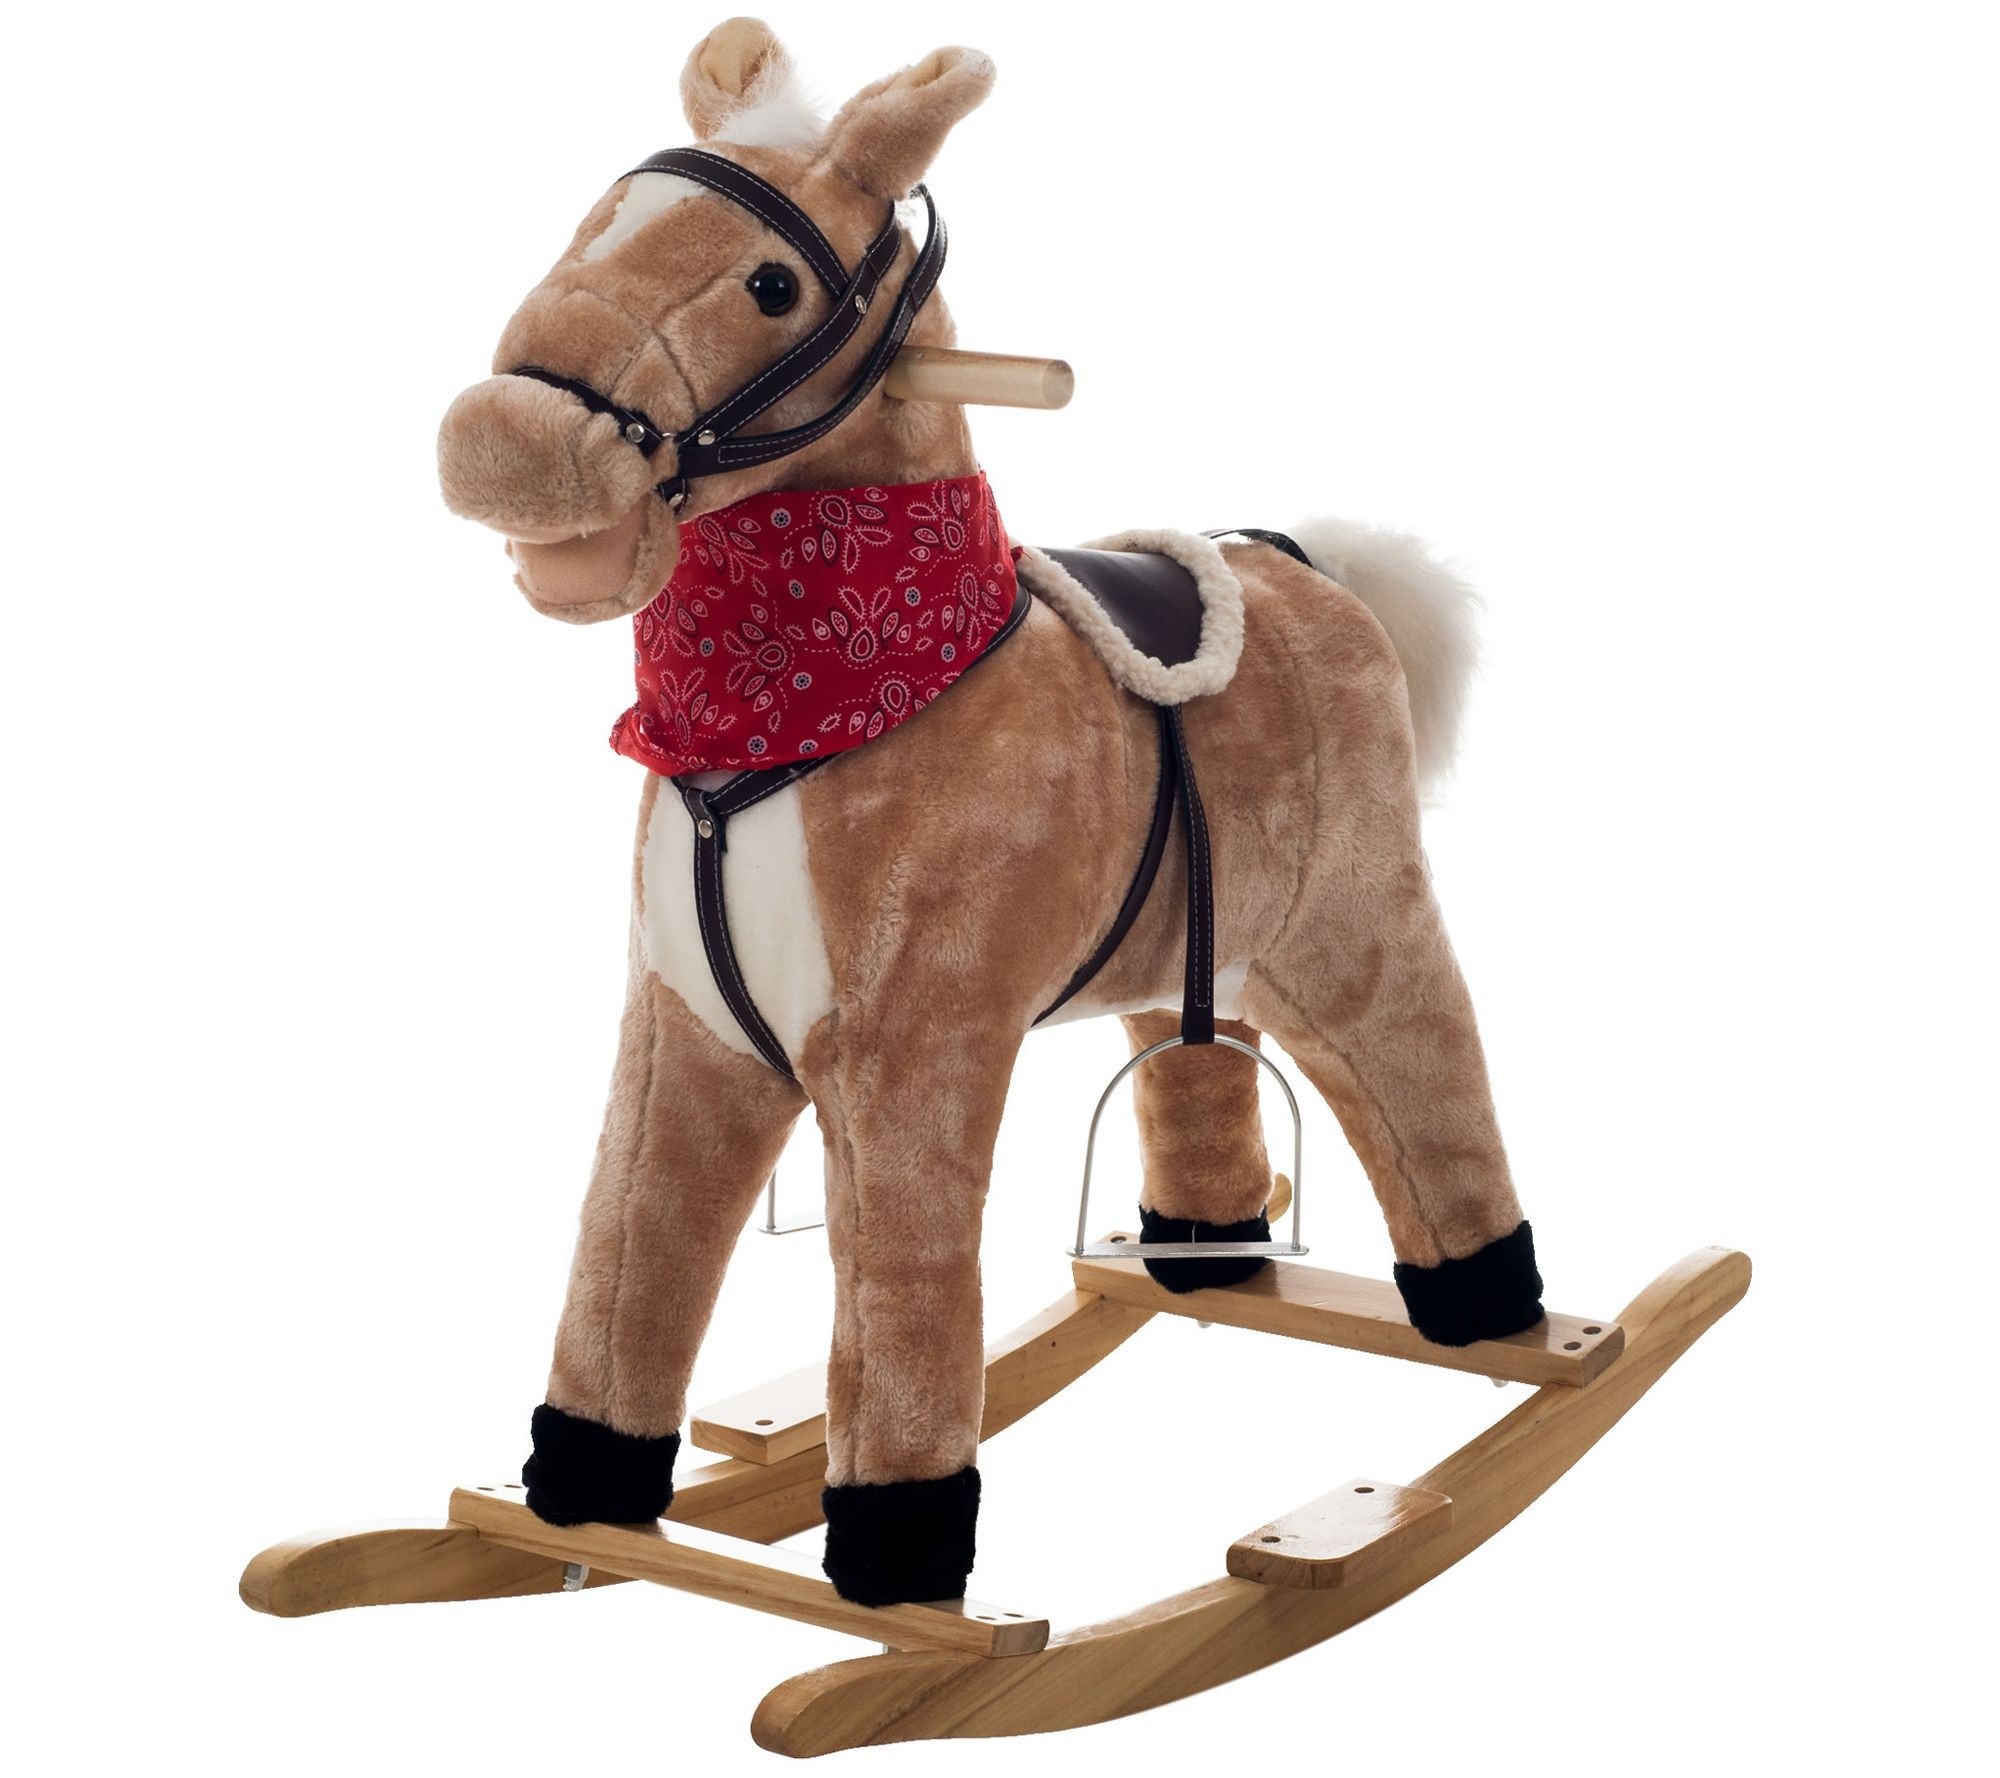 Baby rocking horse wood